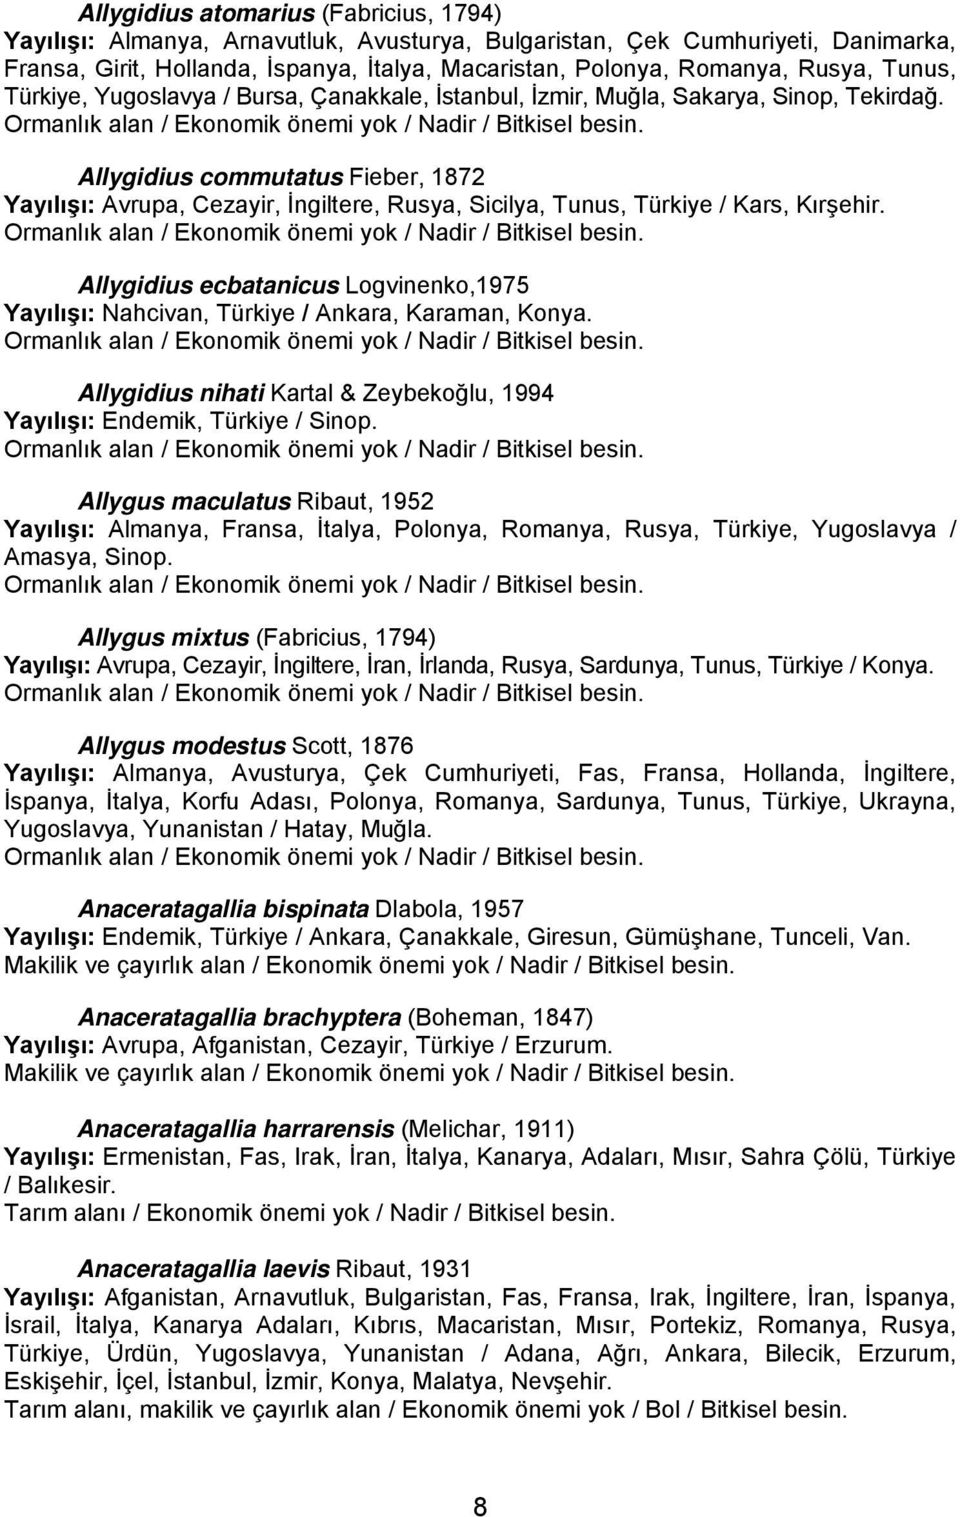 Allygidius commutatus Fieber, 1872 Yayılışı: Avrupa, Cezayir, İngiltere, Rusya, Sicilya, Tunus, Türkiye / Kars, Kırşehir.